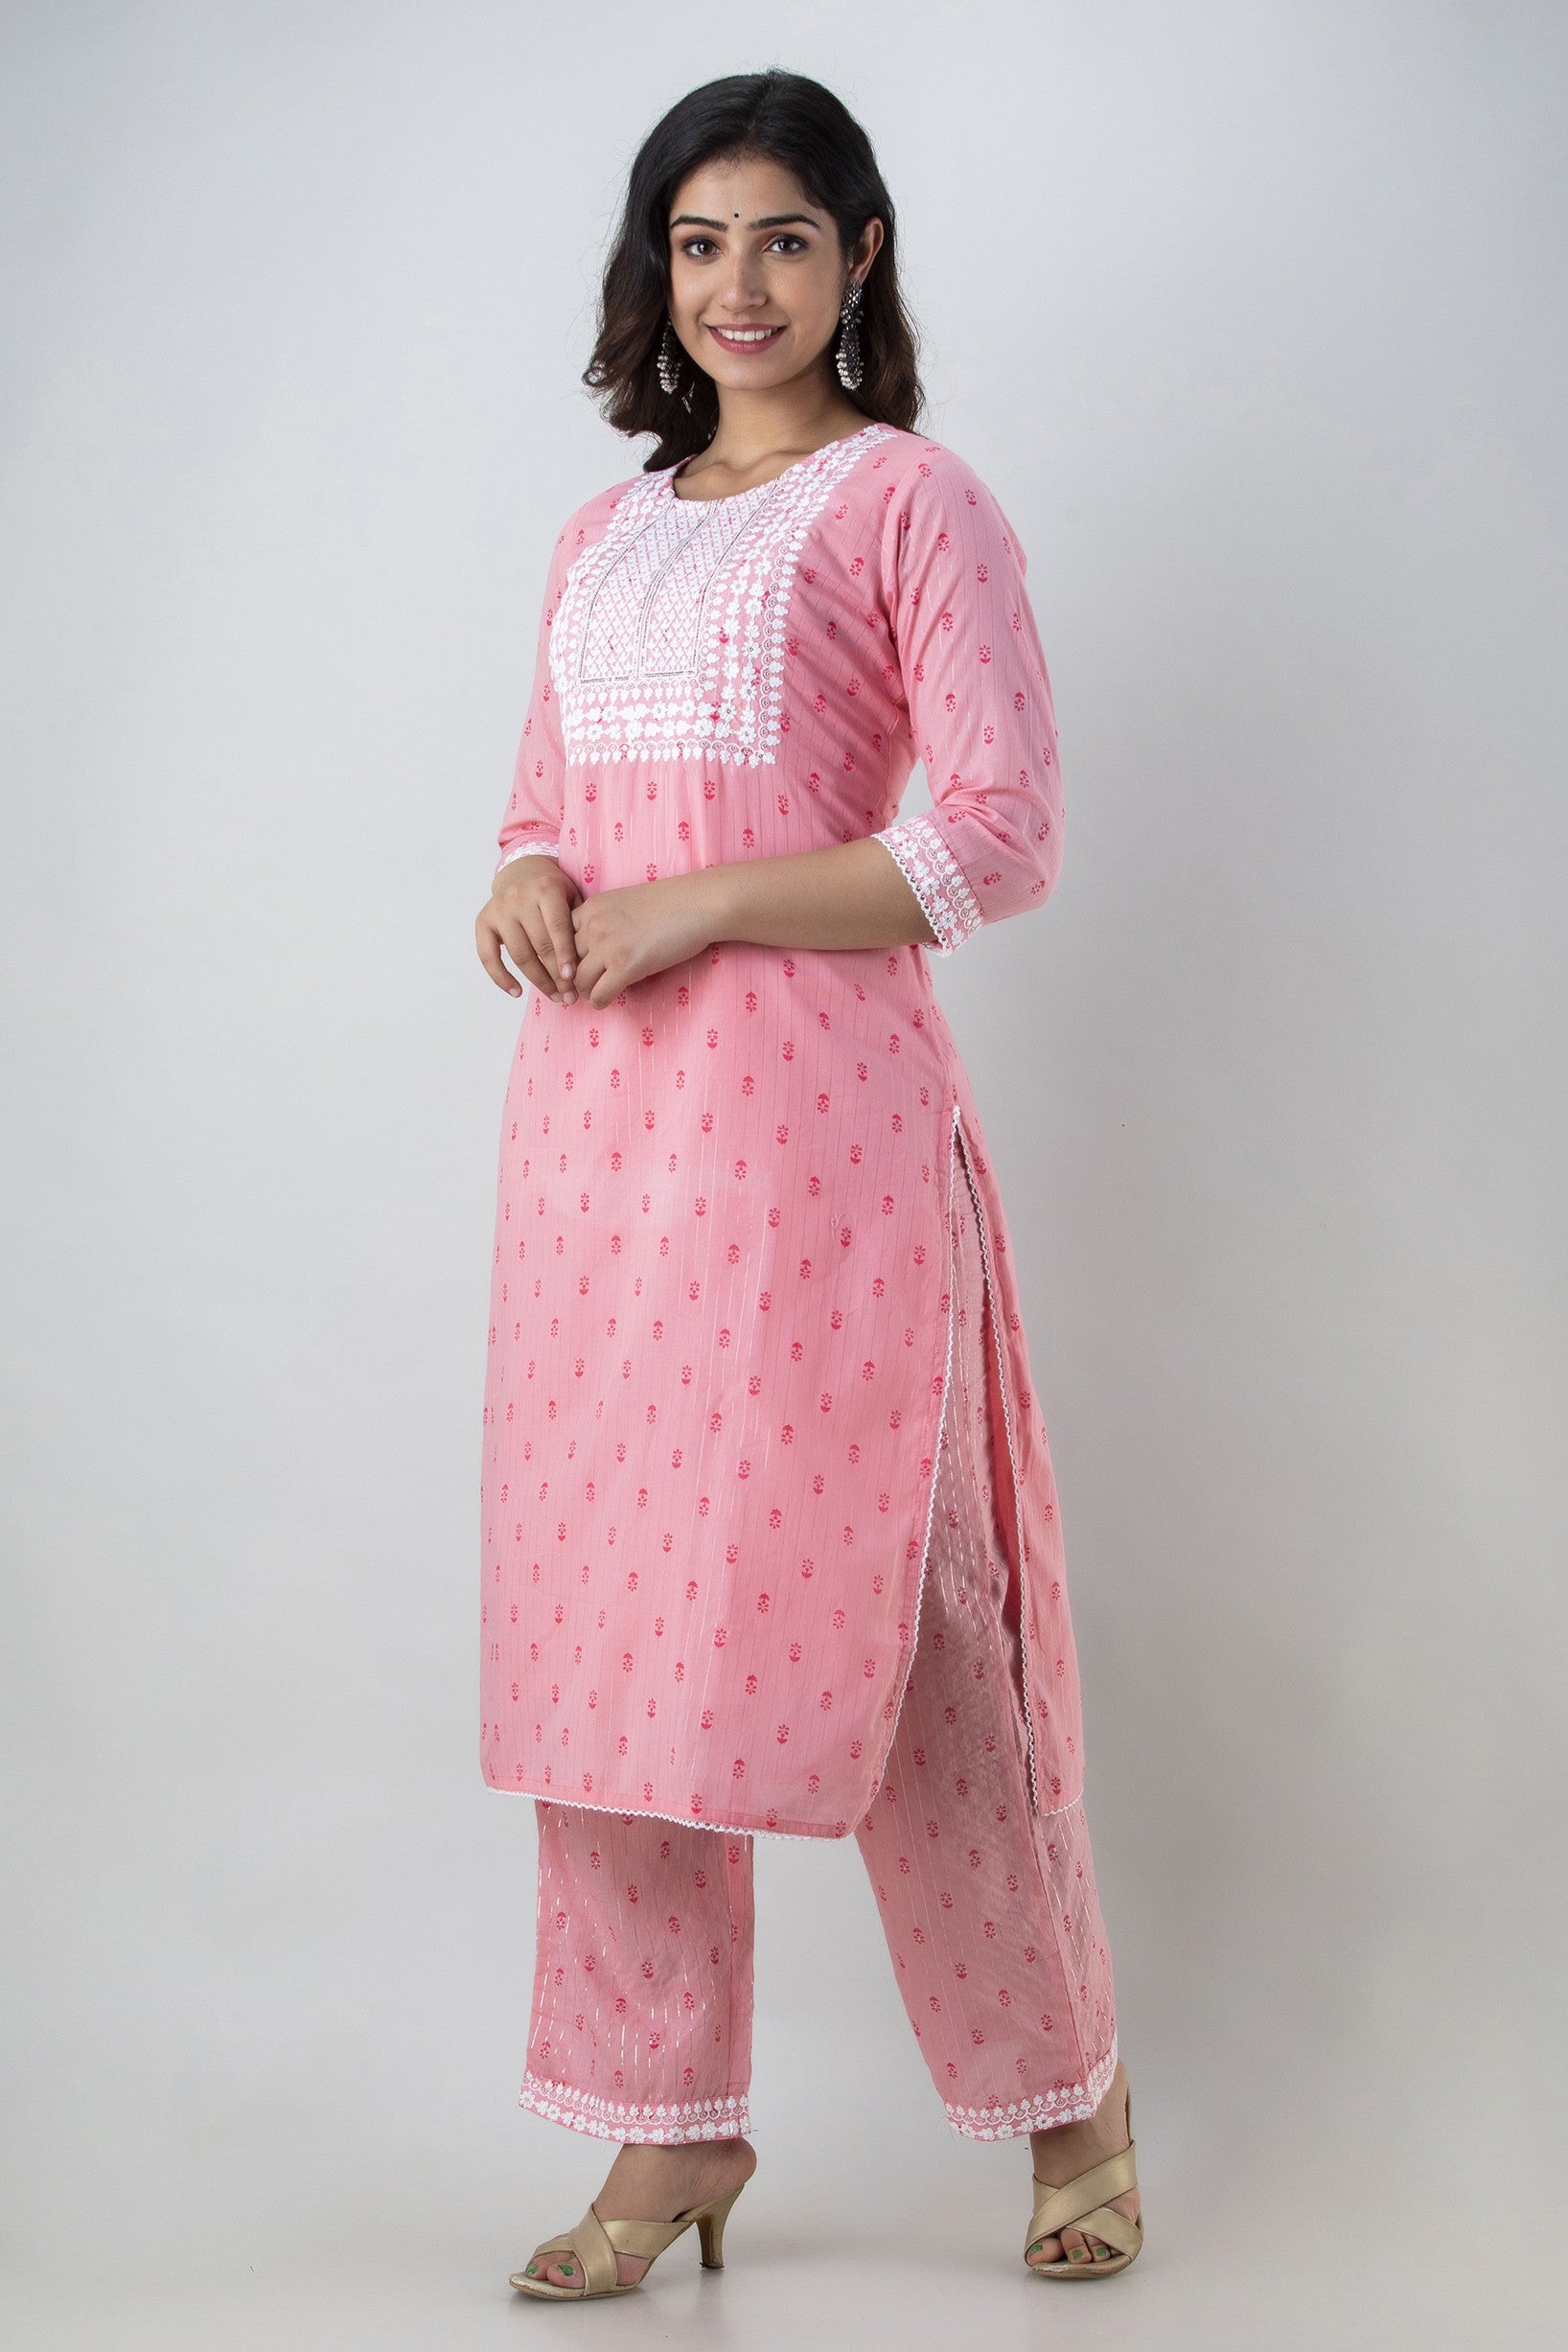 Women's Printed & Embroidered Pure Cotton Straight Kurta Palazzo & Dupatta Set (Light Pink) - Charu